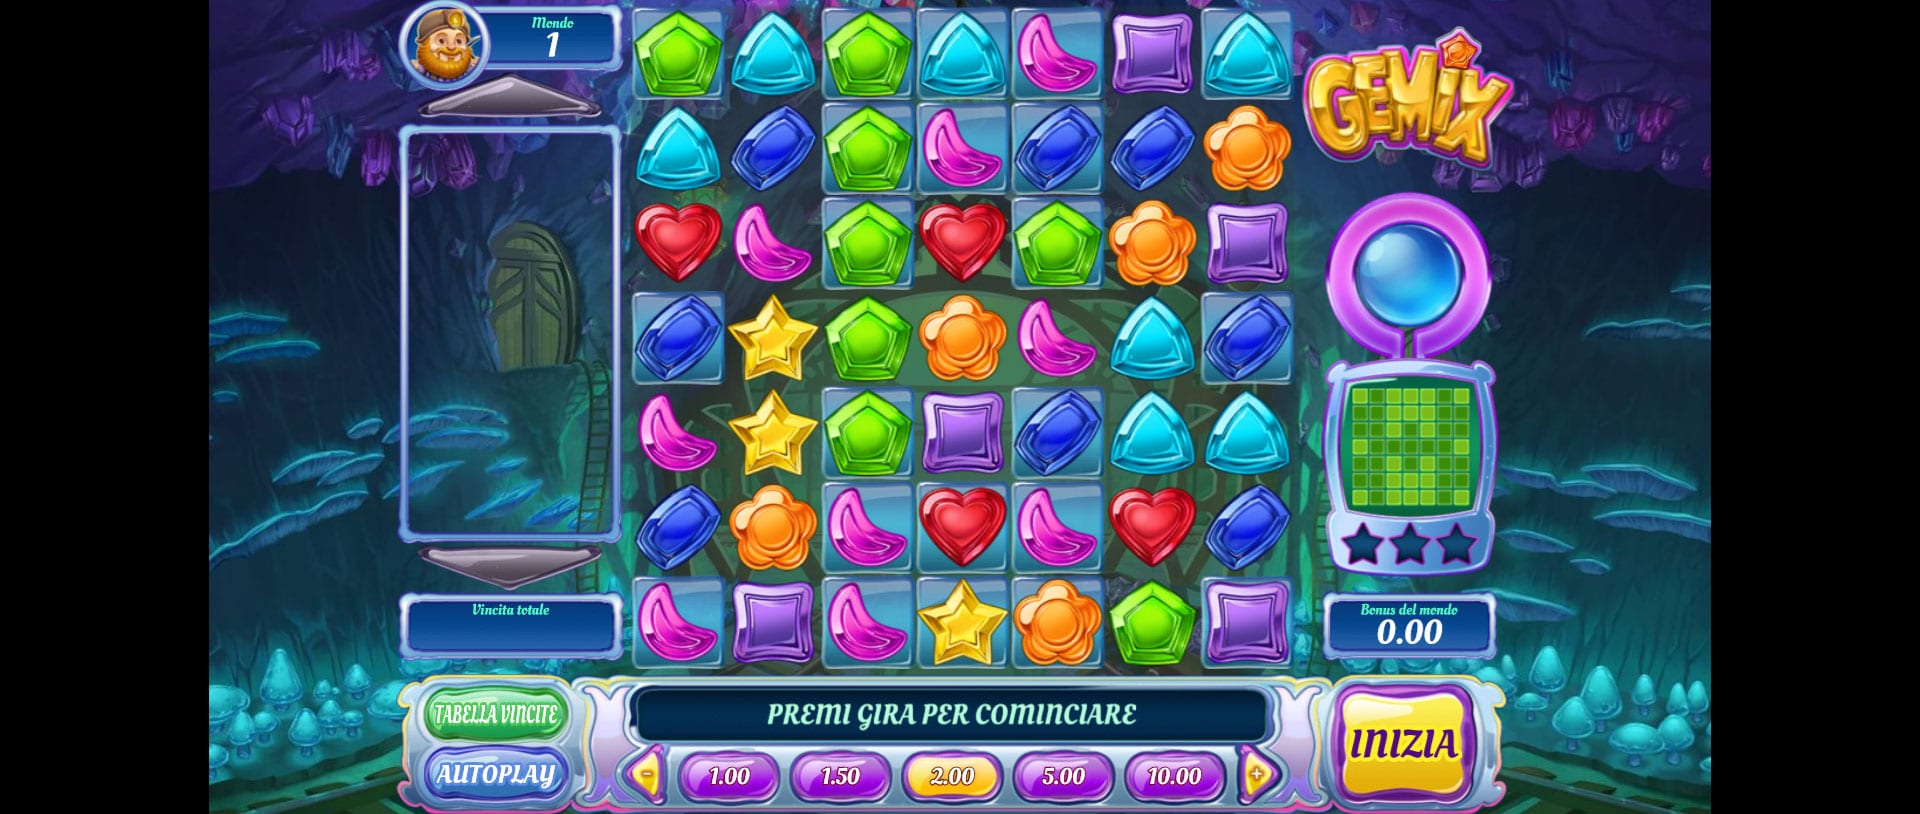 schermo di gioco della slot machine gemix